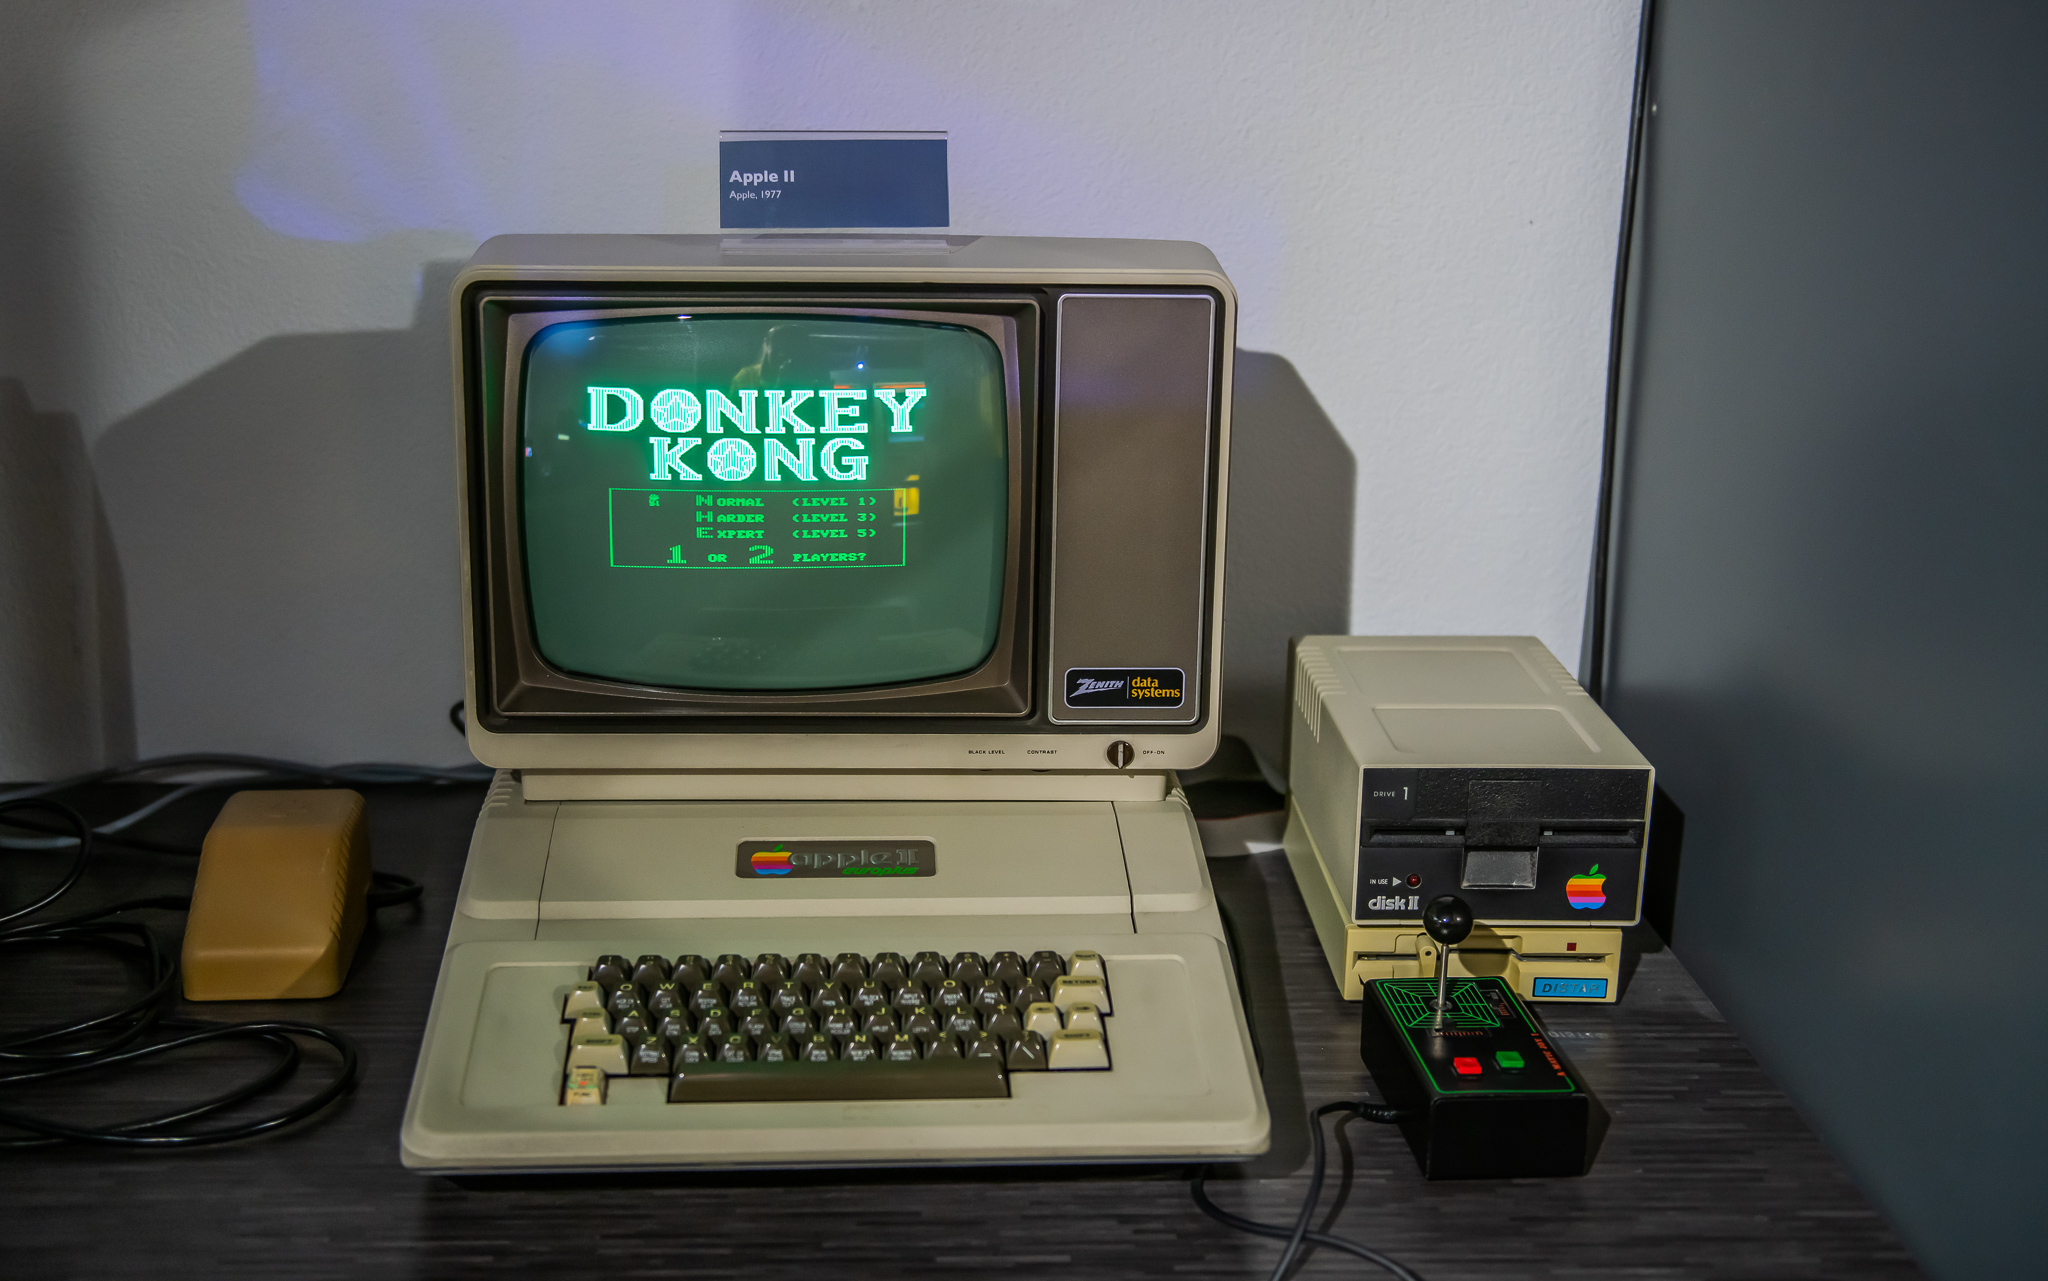 Apple II : Das interaktive Spielmuseum in Luzern